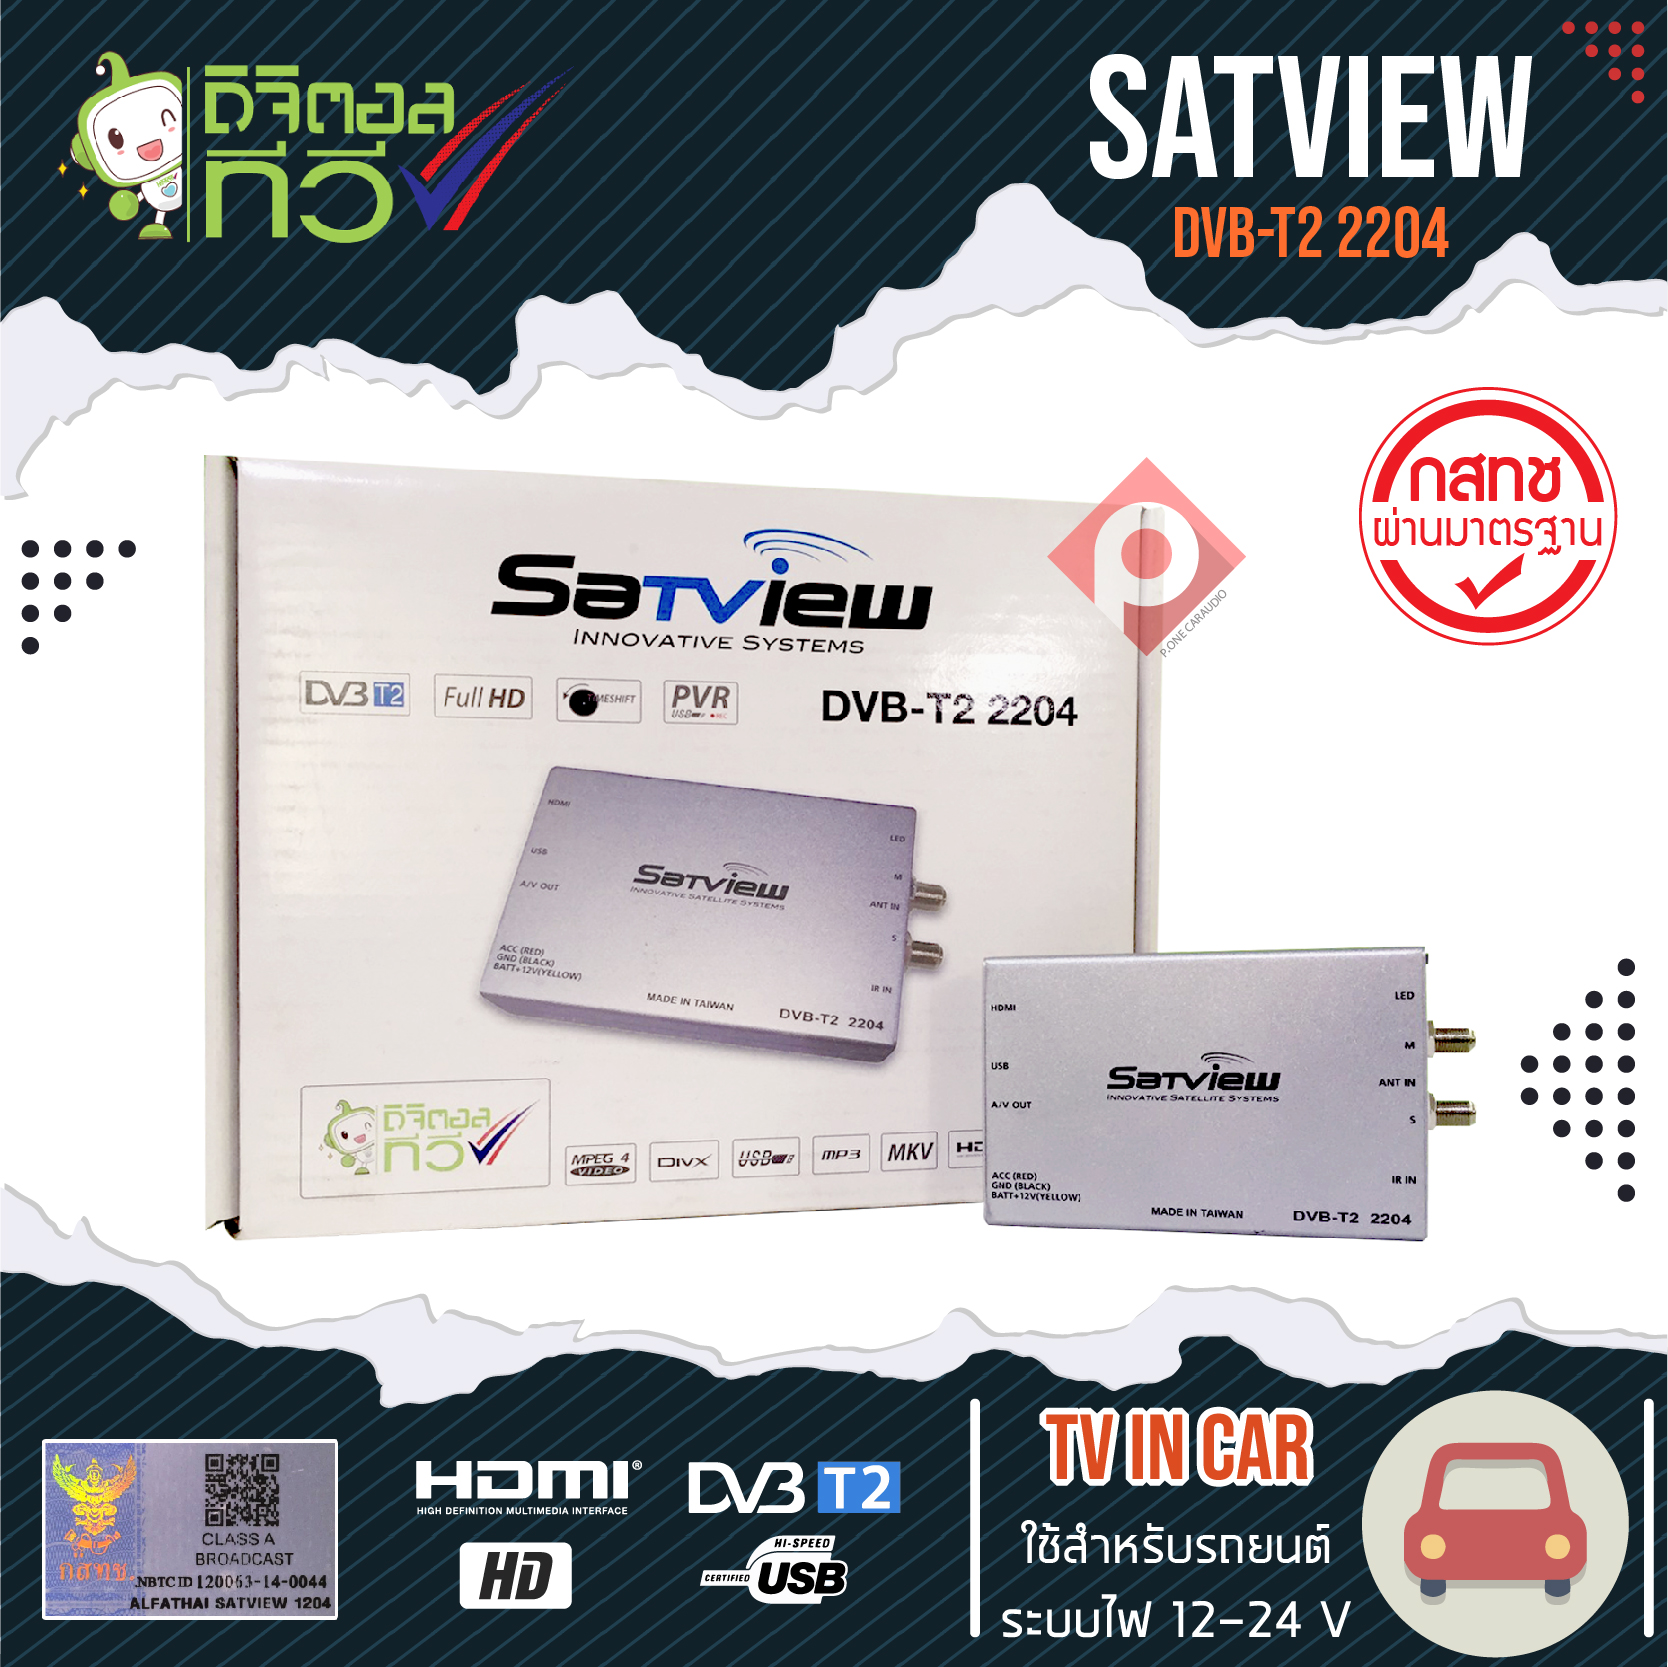 กล่องทีวีดิจิตอลติดรถยนต์ SATVIEW DVB–T2 2204 เสาสัญญาณทีวี 2ชุด